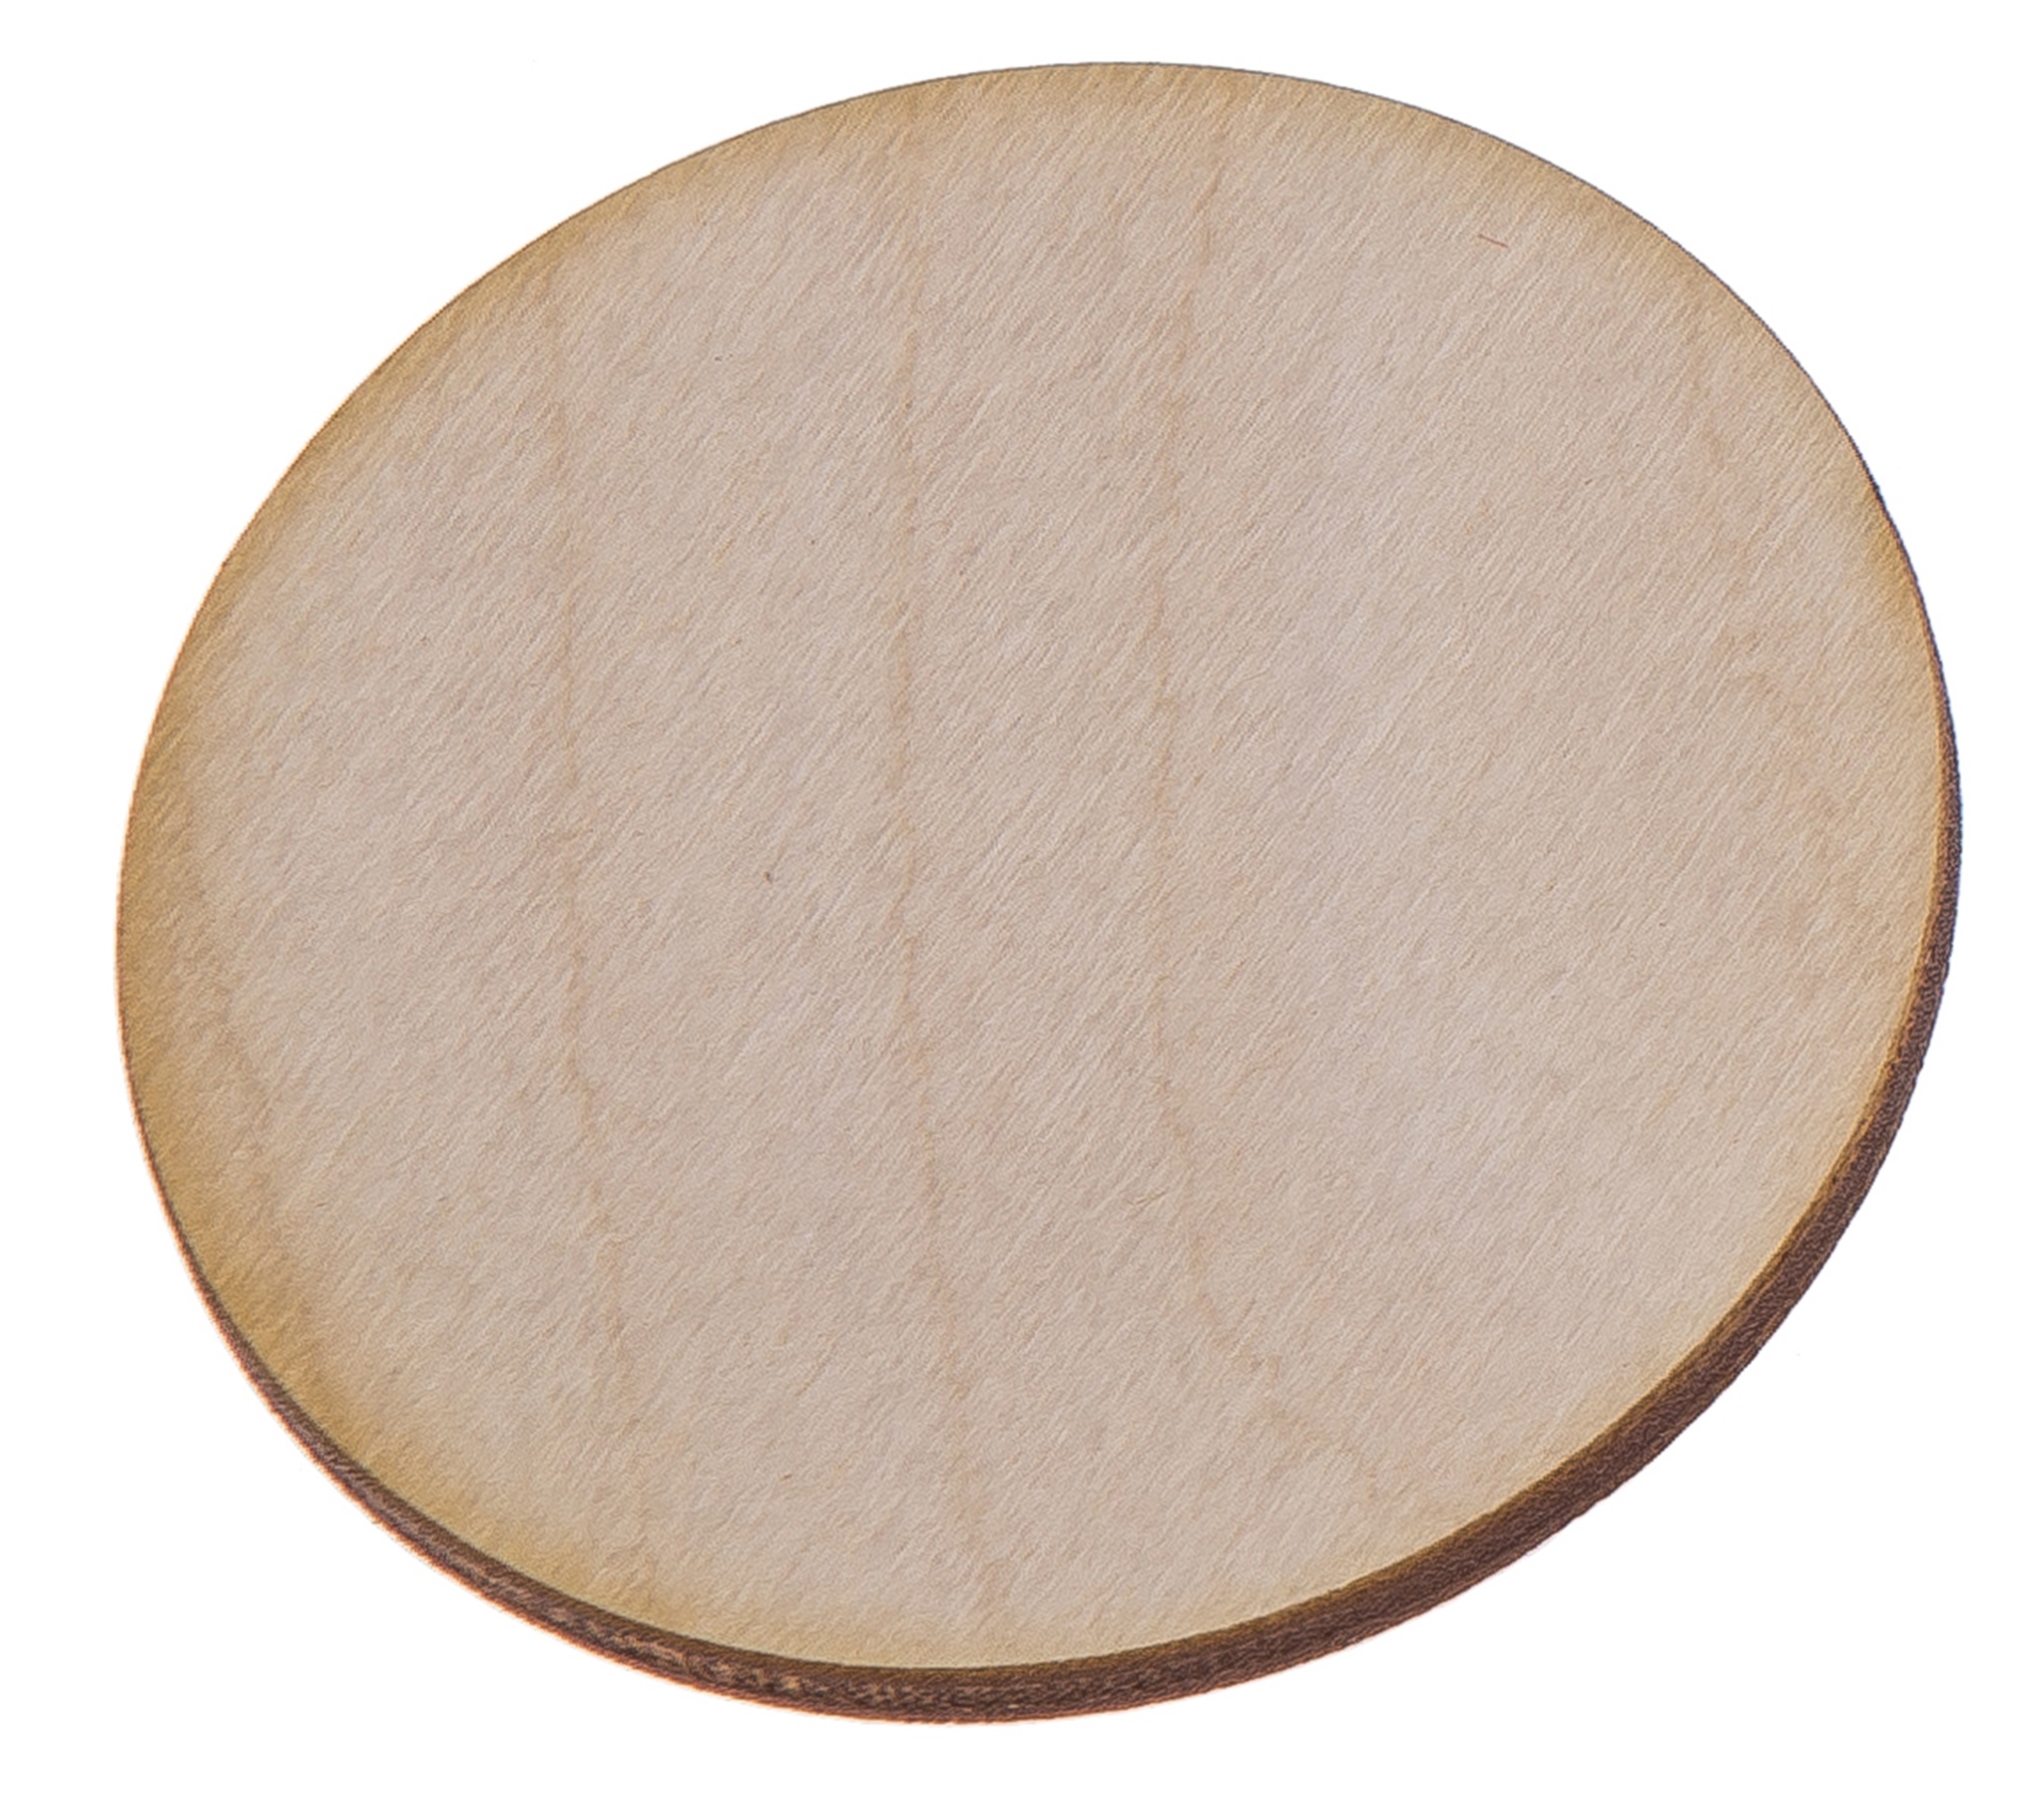 В кругу 36 см. Деревянный круг. Круг из дерева. Круг из дерева 150мм. Деревянный круг для пиццы.